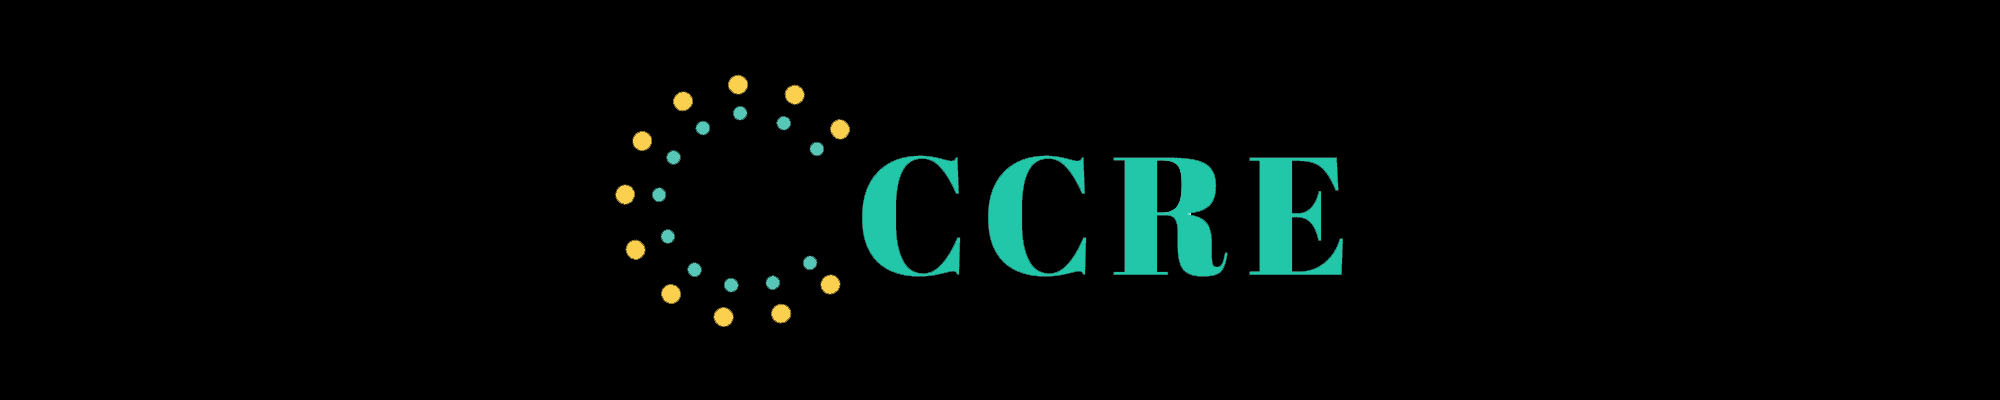 CCRE logo